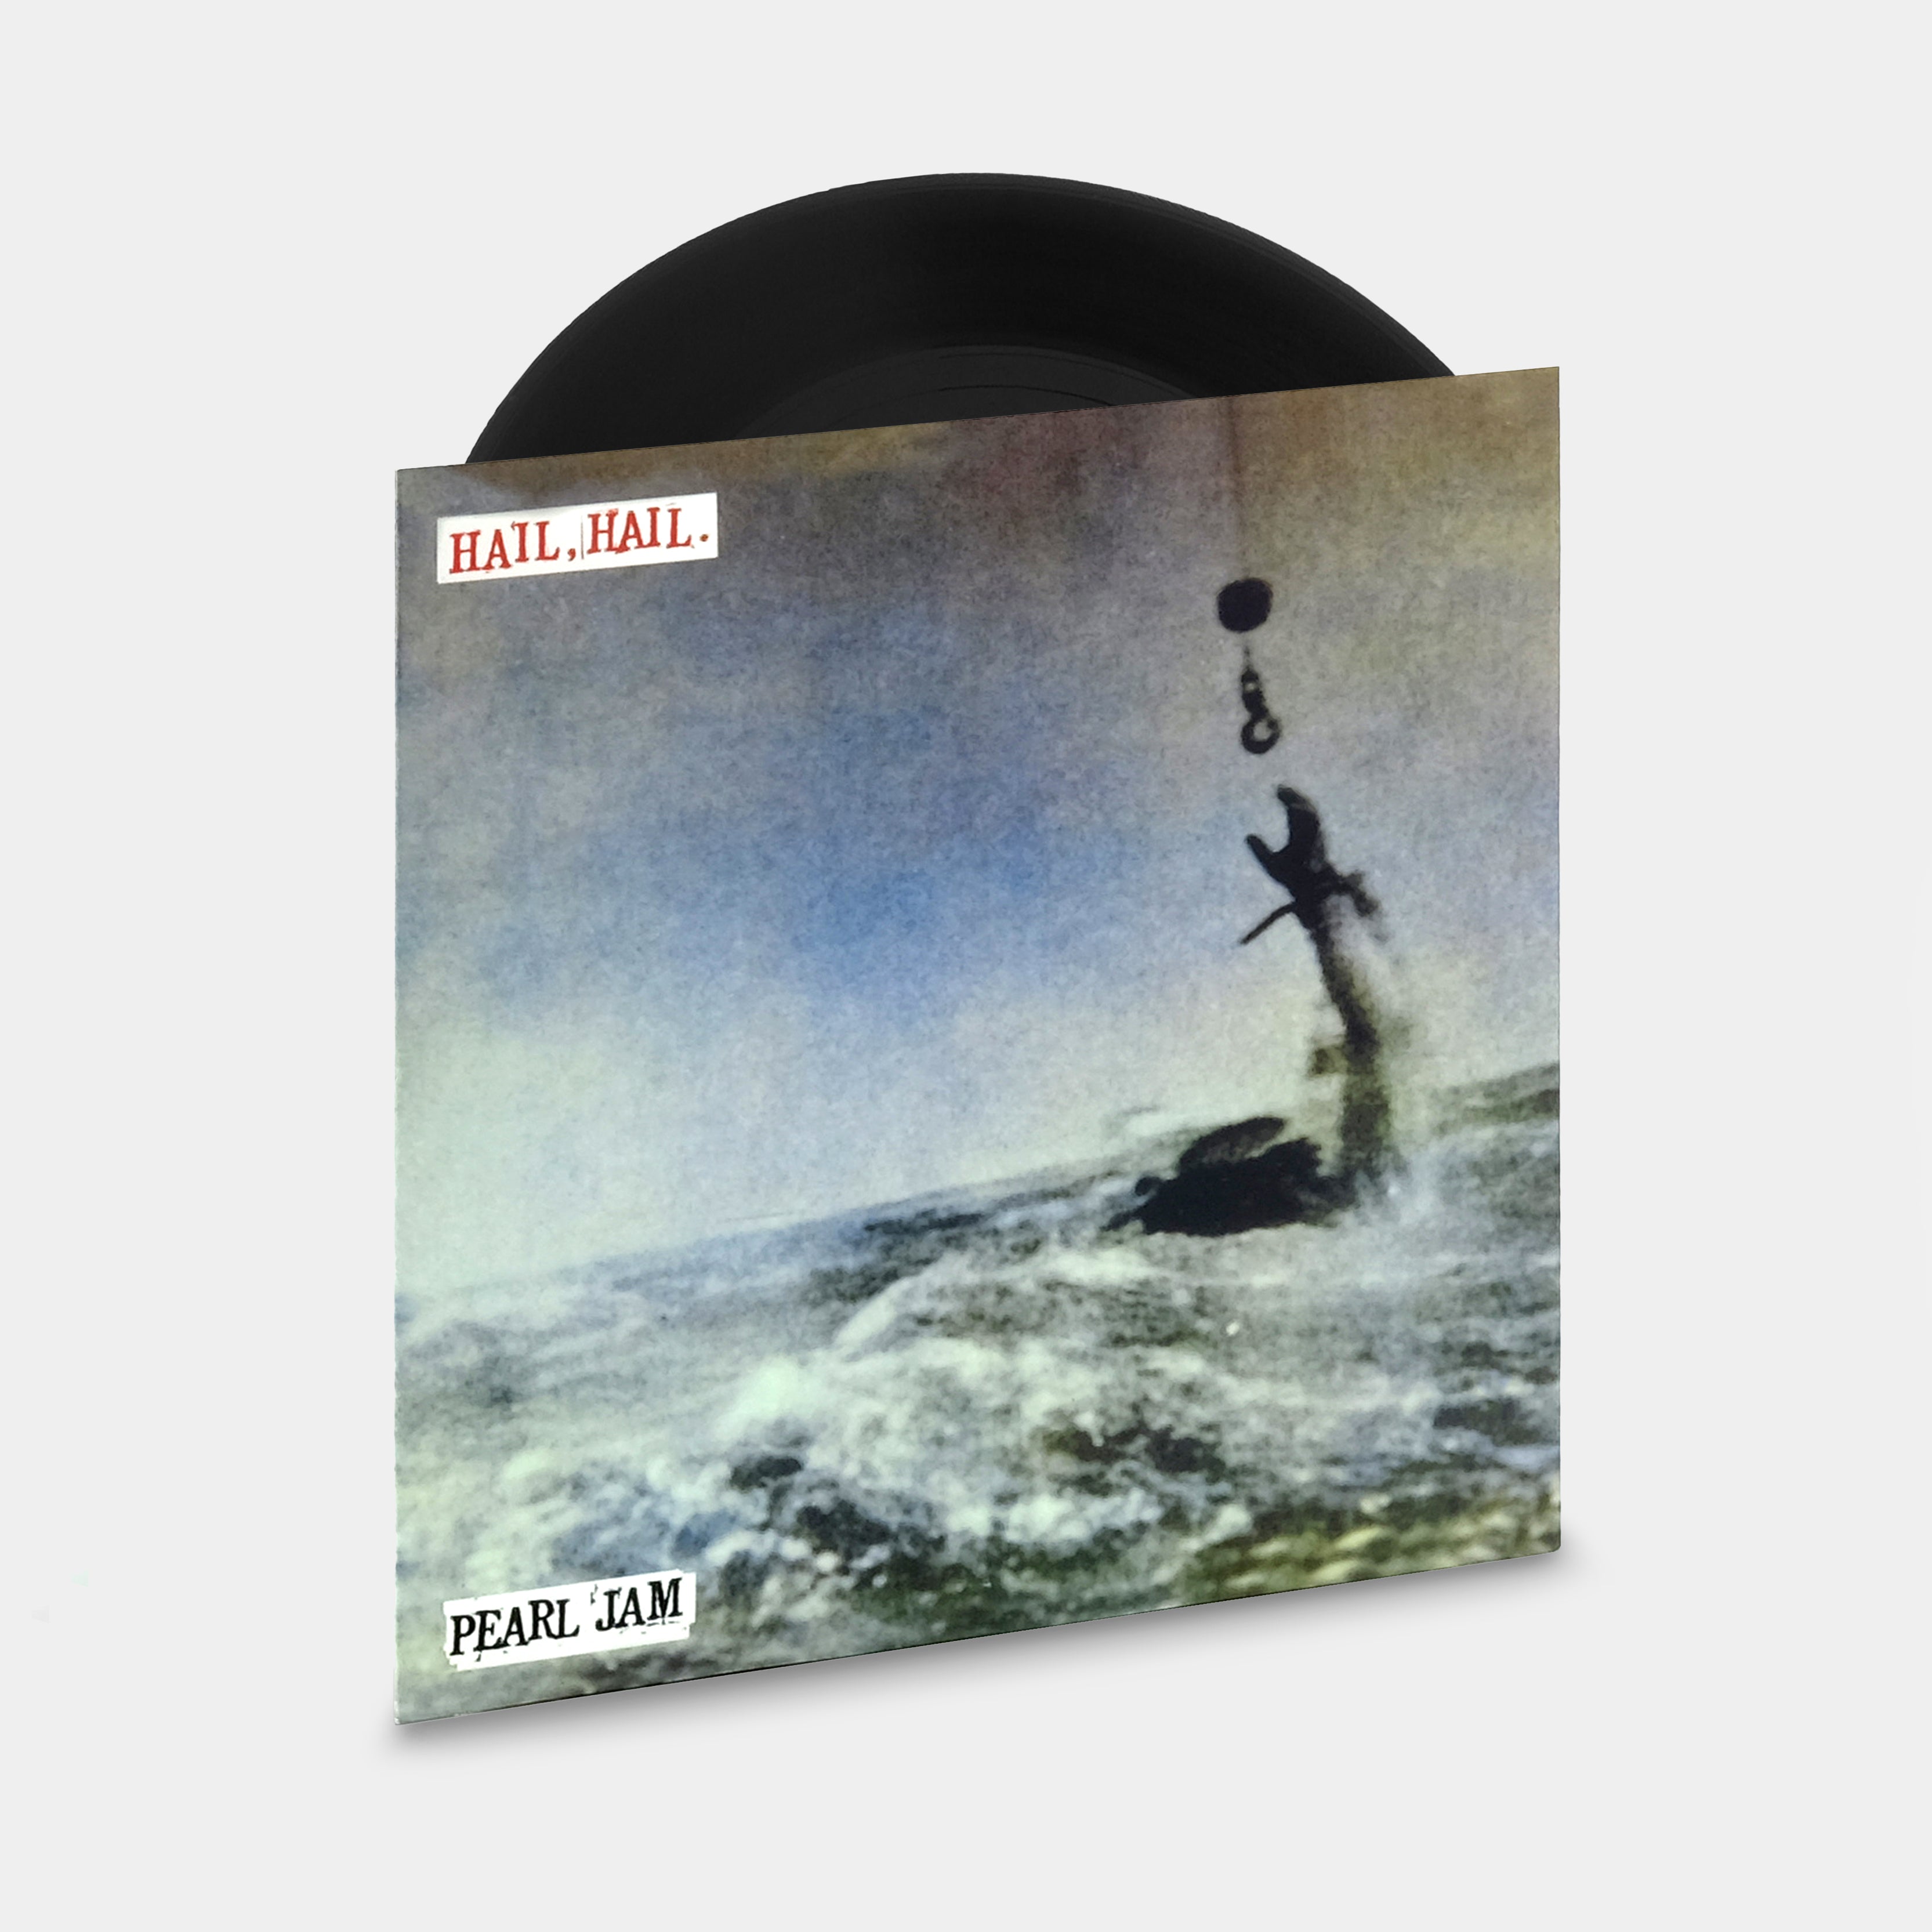 Pearl Jam - Hail, Hail 7" Single Vinyl Record